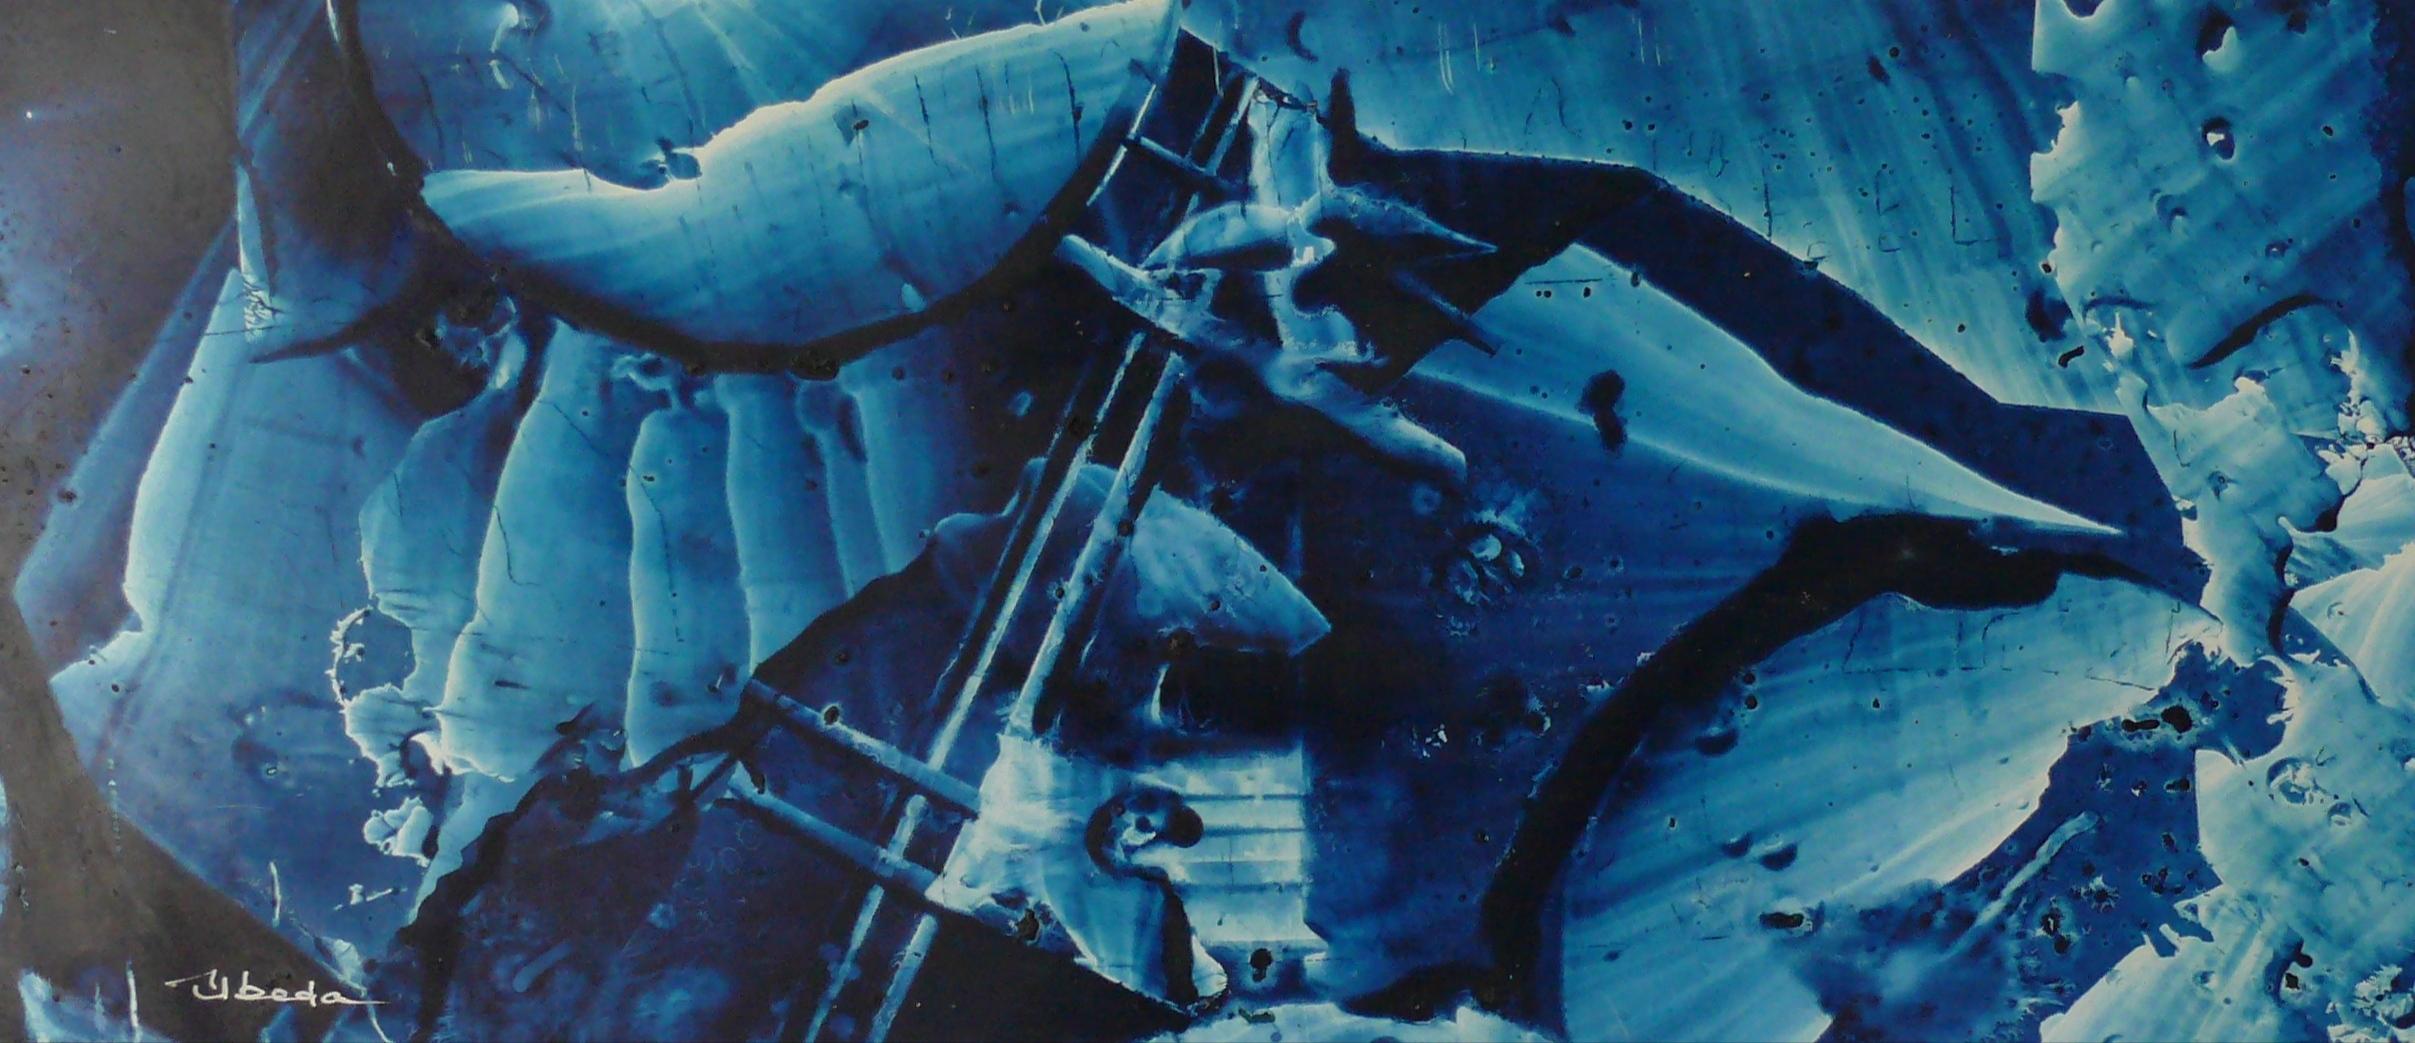 Figurative Painting Ángel Luis Úbeda - Série Under The Sea N 19. beda. Paysage fantastique à l'huile de couleur bleue sous-marine. 